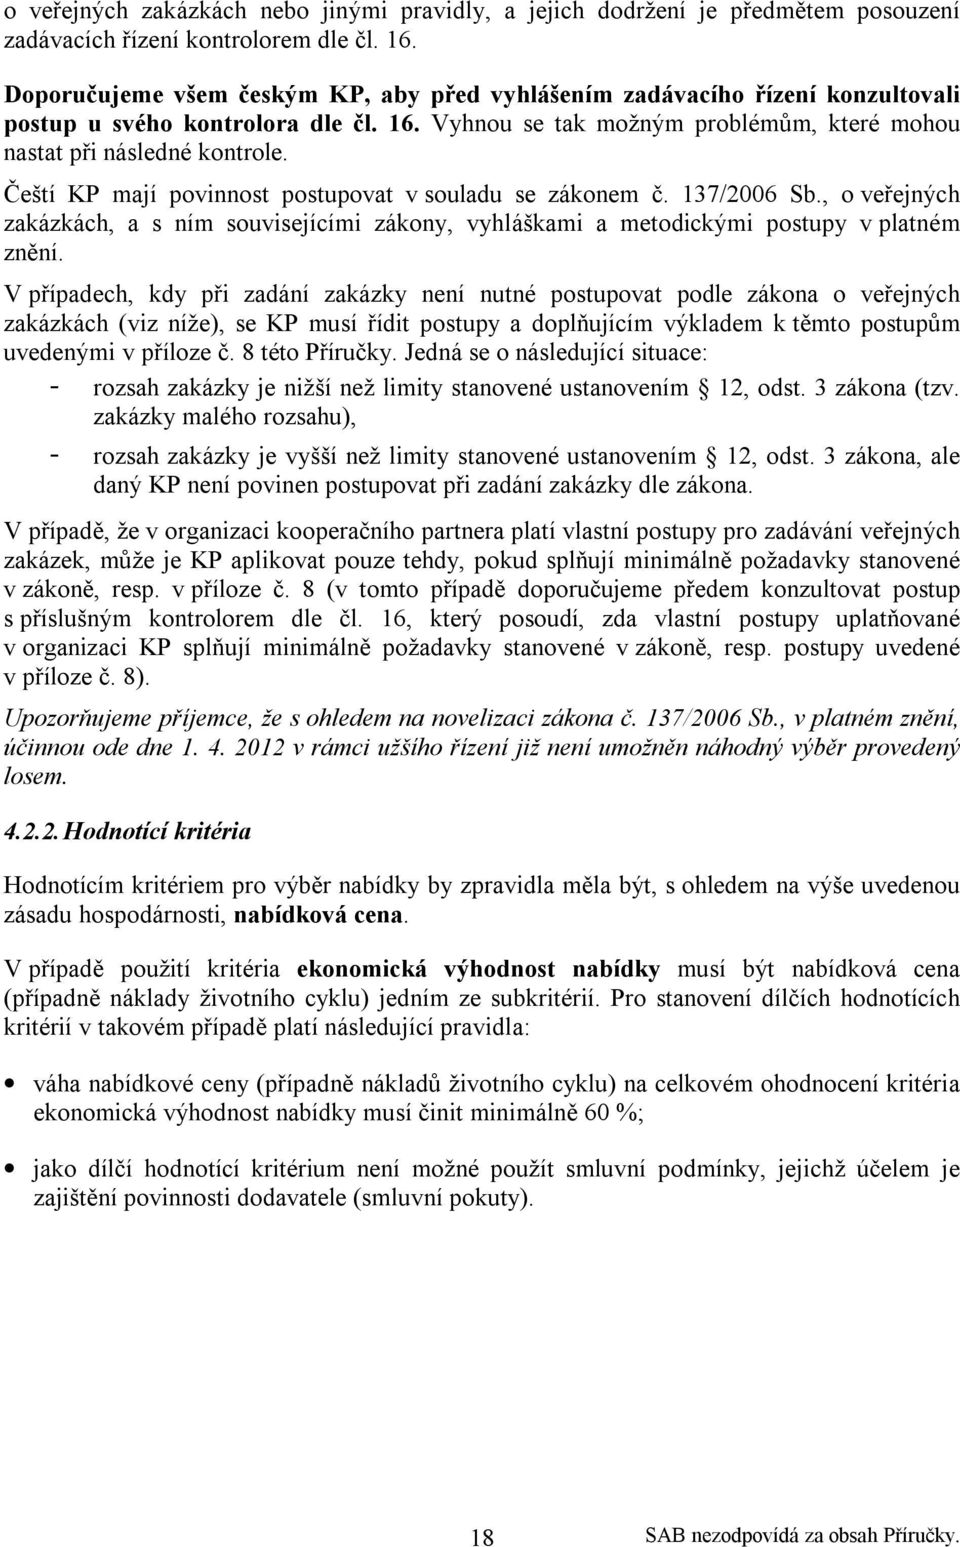 Čeští KP mají povinnost postupovat v souladu se zákonem č. 137/2006 Sb., o veřejných zakázkách, a s ním souvisejícími zákony, vyhláškami a metodickými postupy v platném znění.